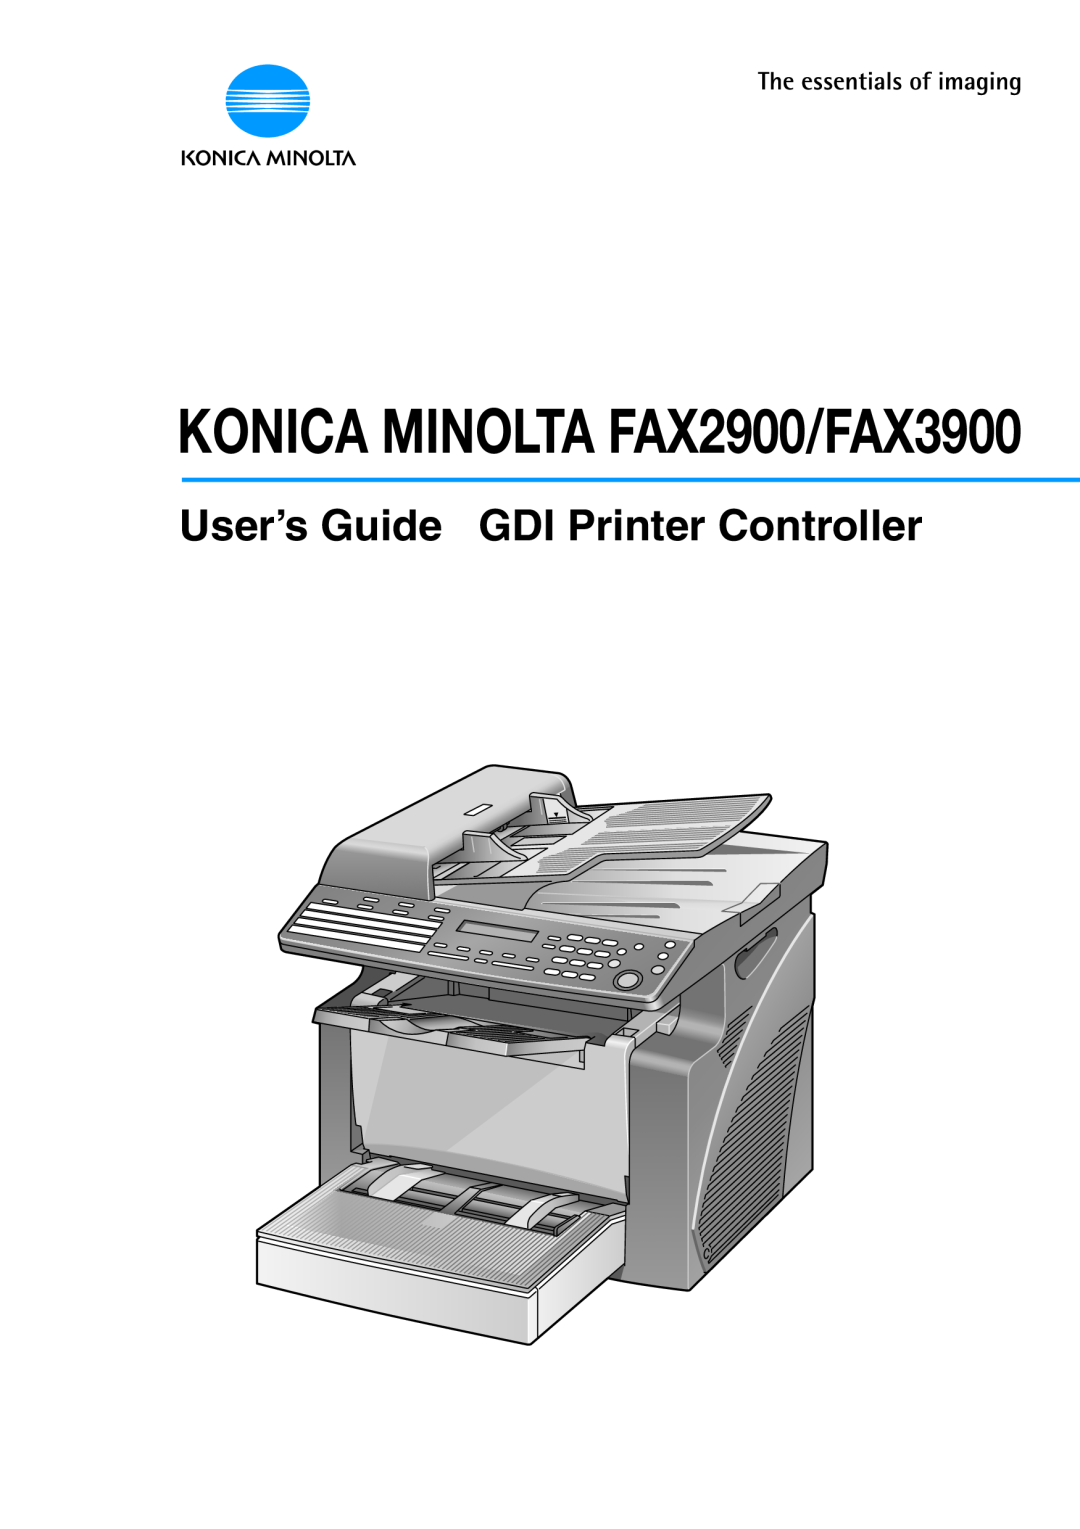 Konica Minolta manual KONICA MINOLTA FAX2900/FAX3900, User’s Guide GDI Printer Controller 